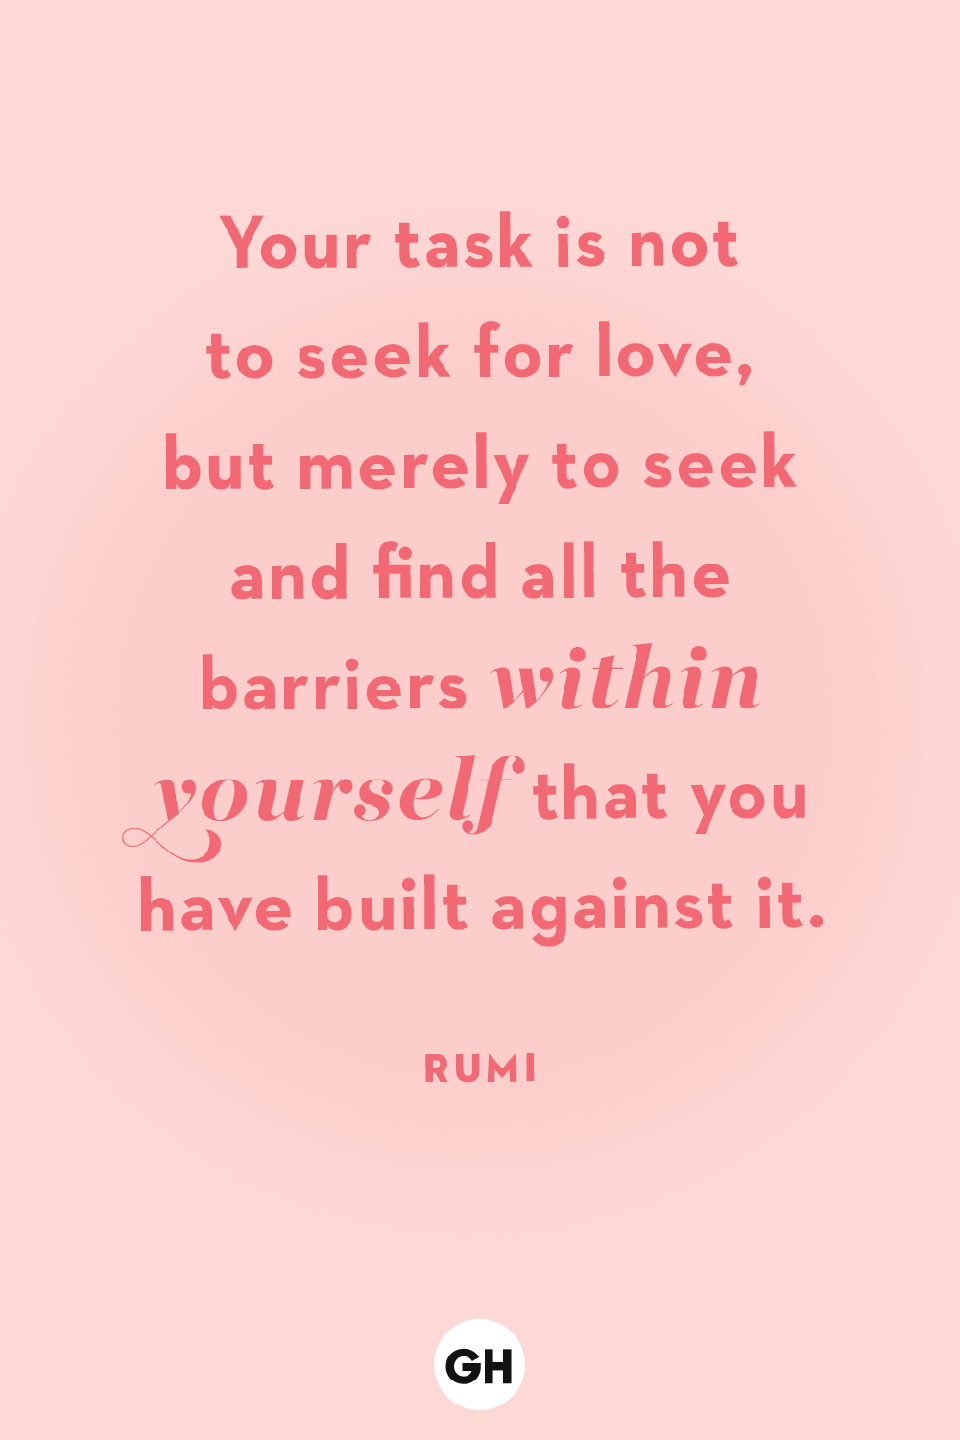 111) Rumi